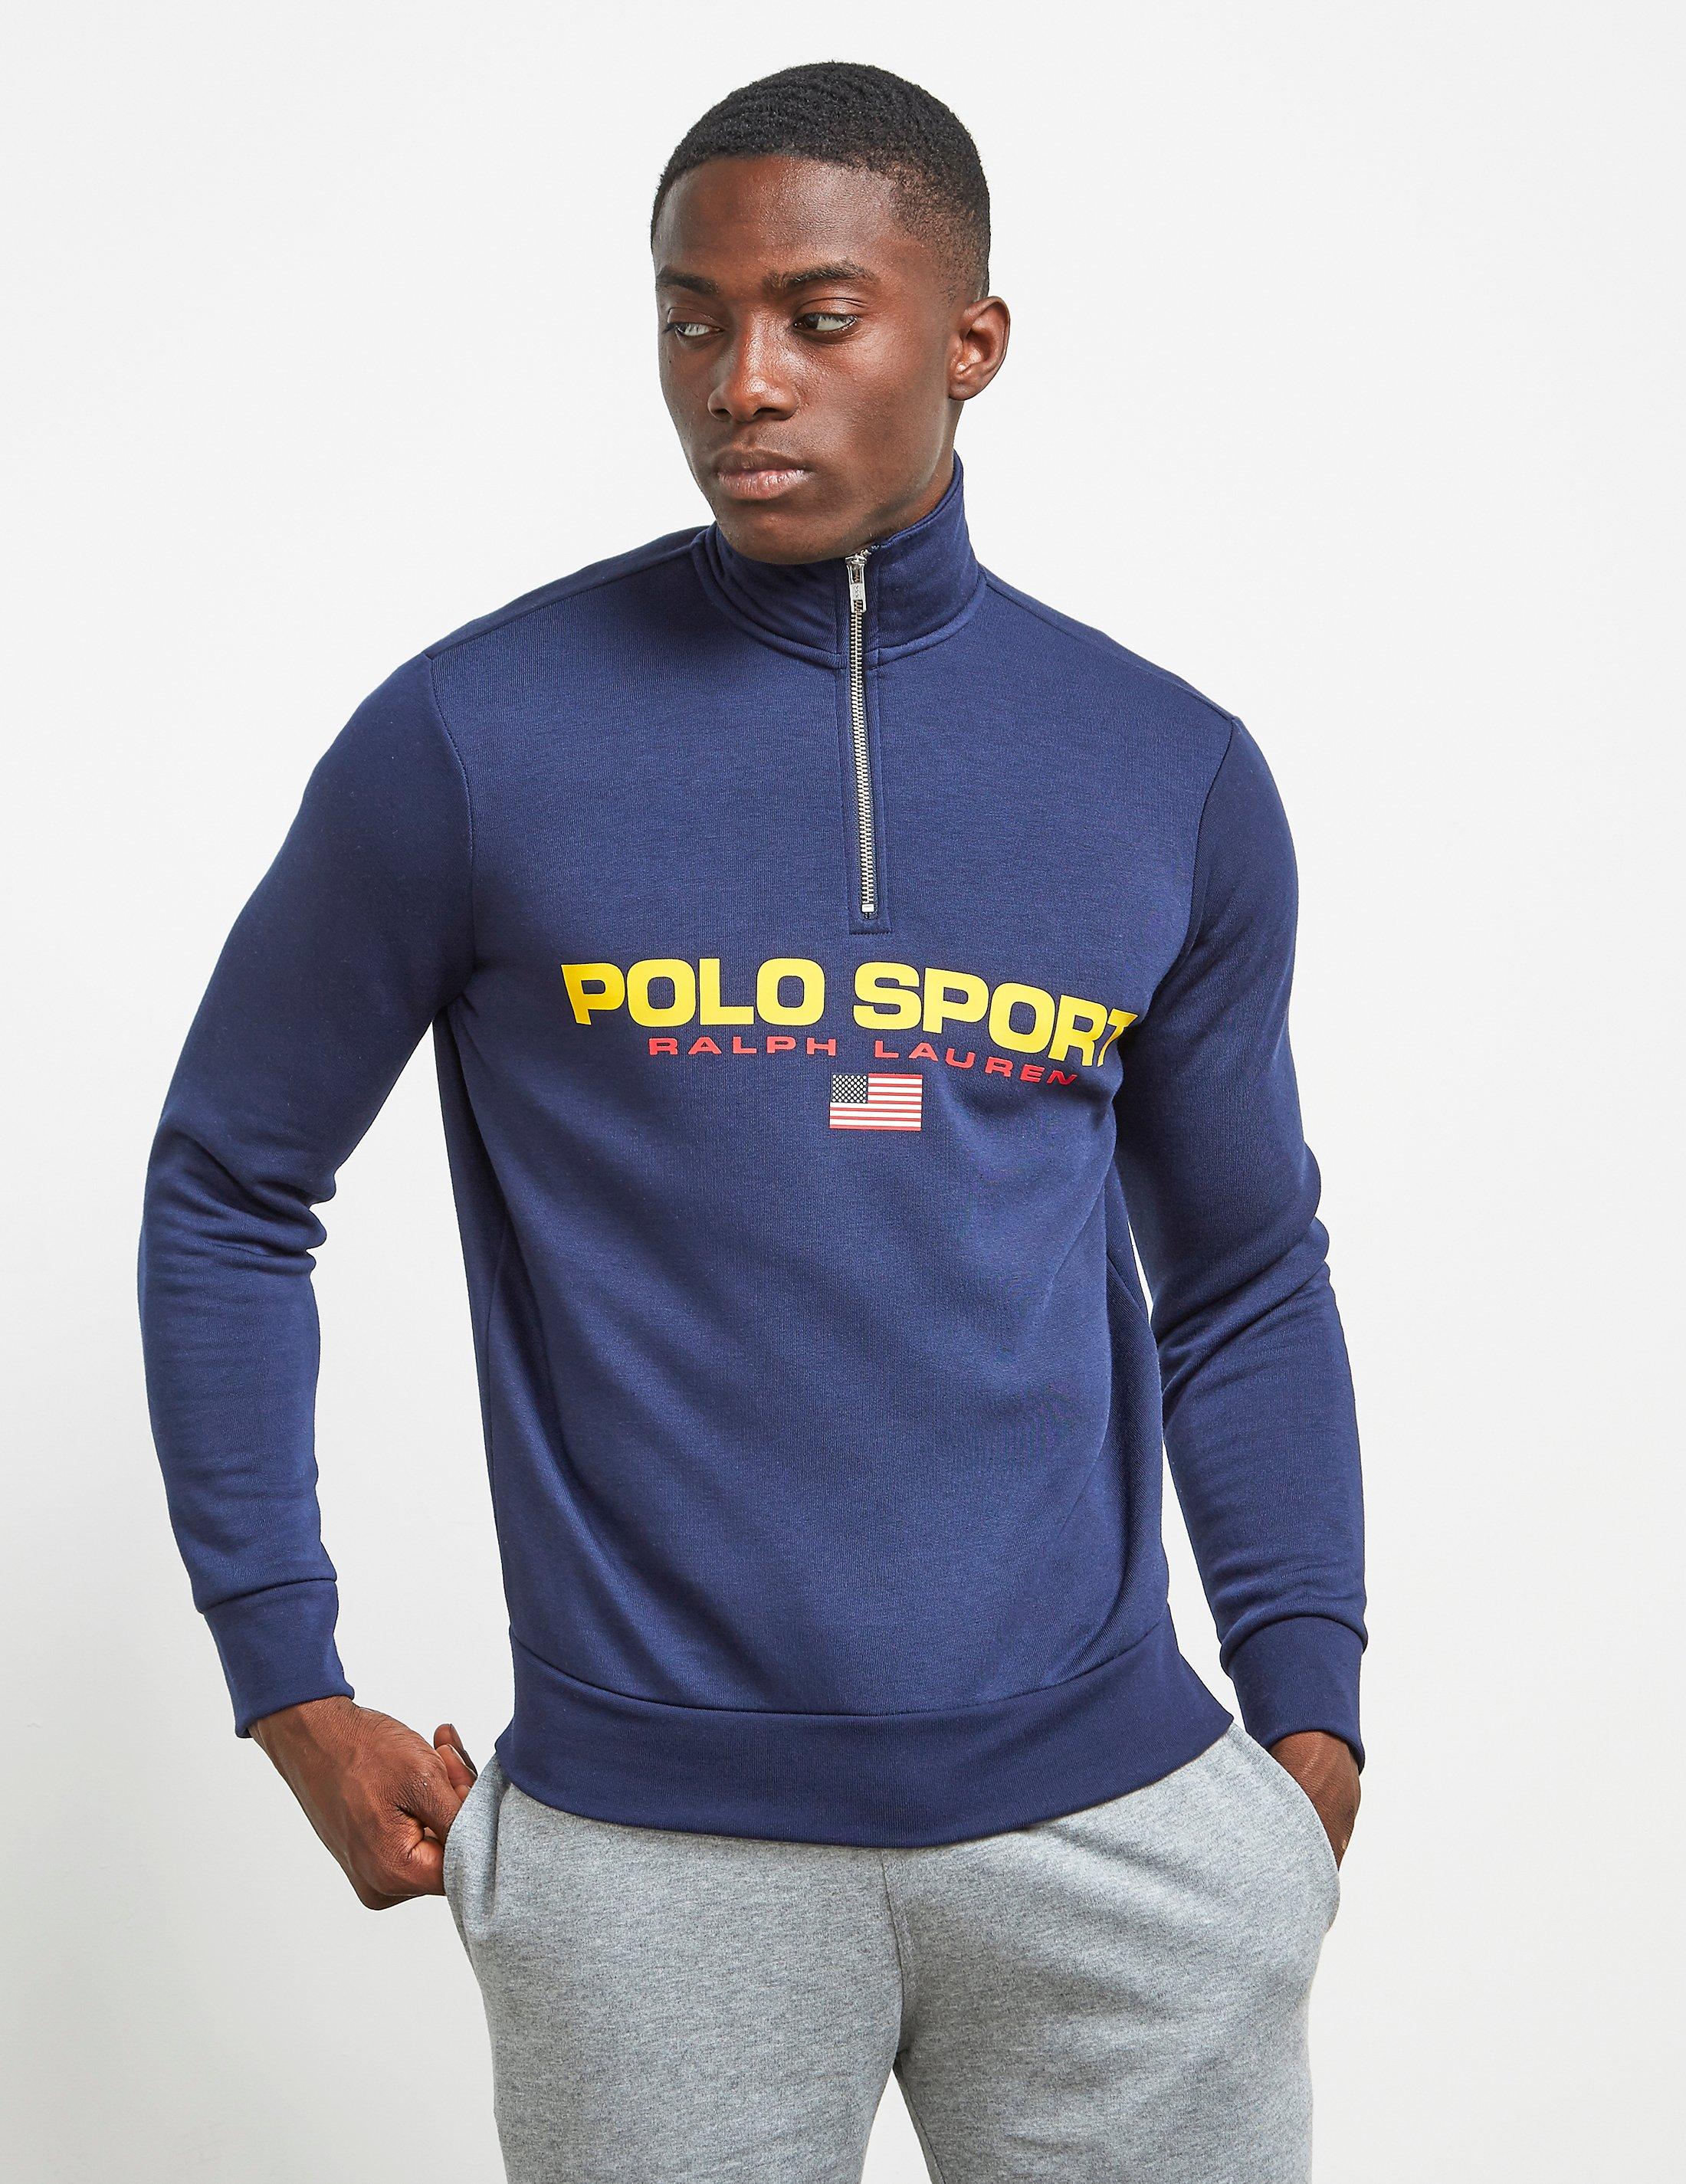 polo sport ralph lauren half zip